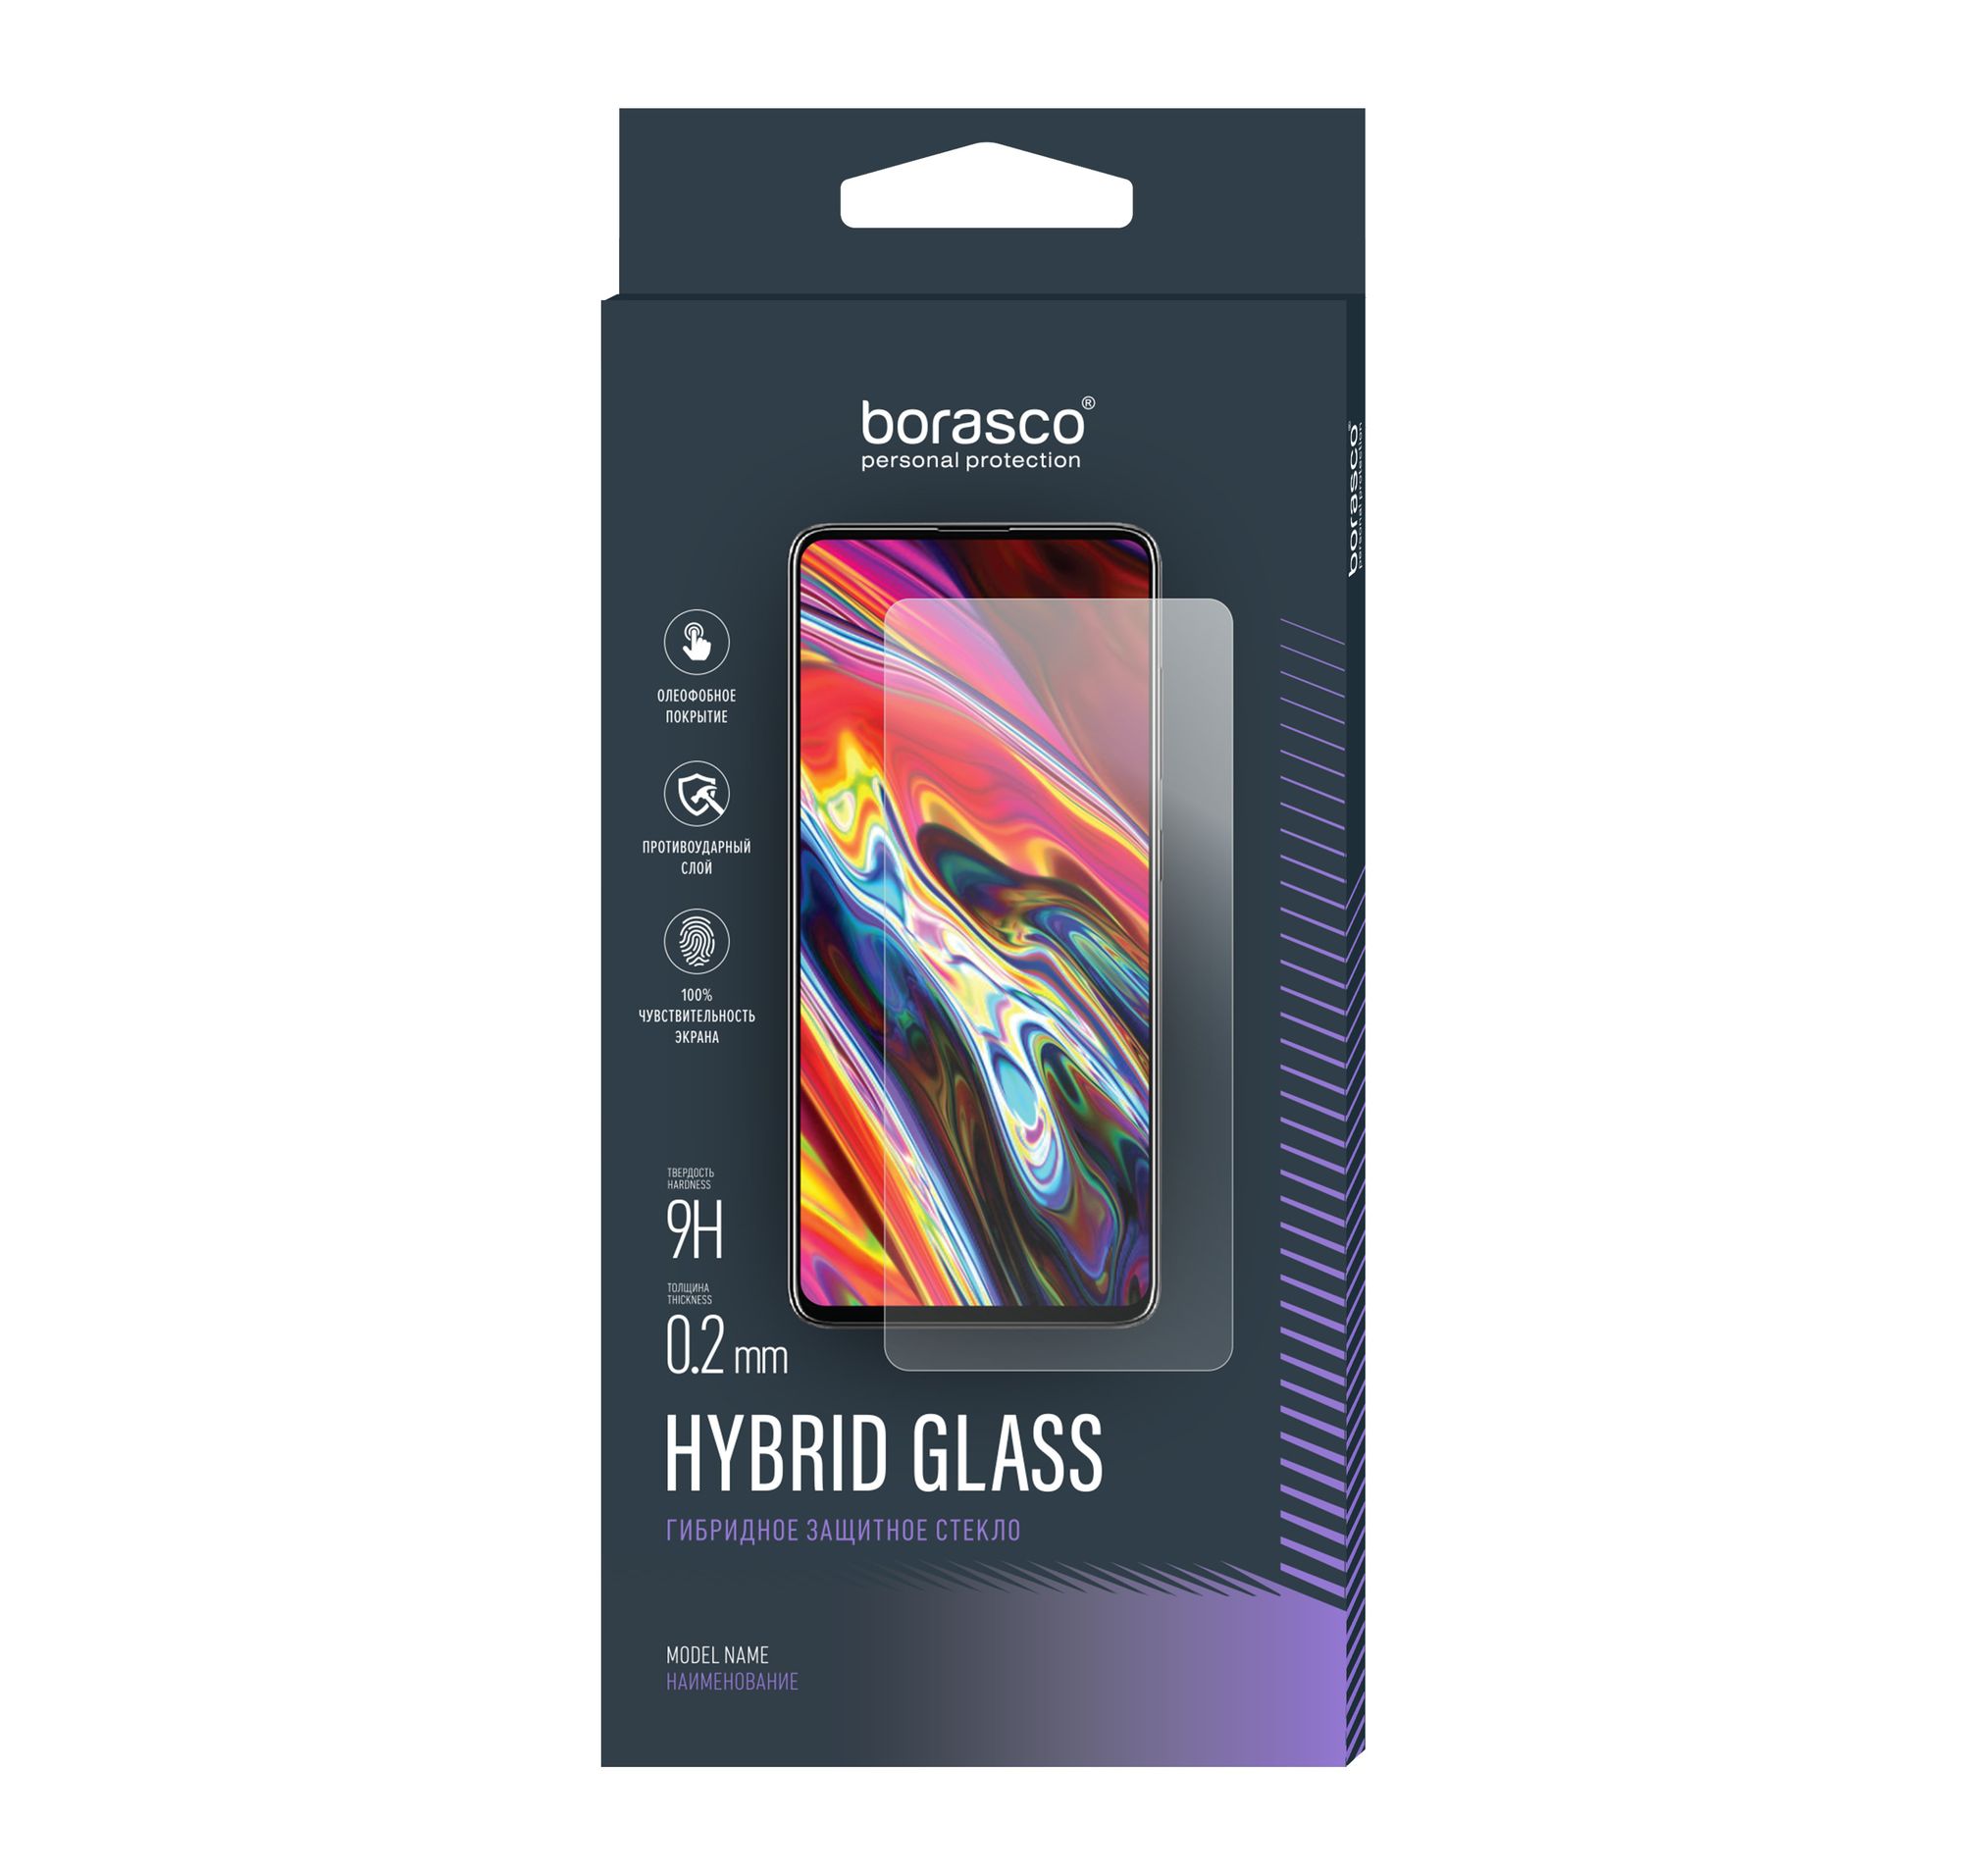 Стекло защитное Hybrid Glass VSP 0,26 мм для Motorola Moto g7 Power защитное стекло 3d для motorola moto g7 play черный